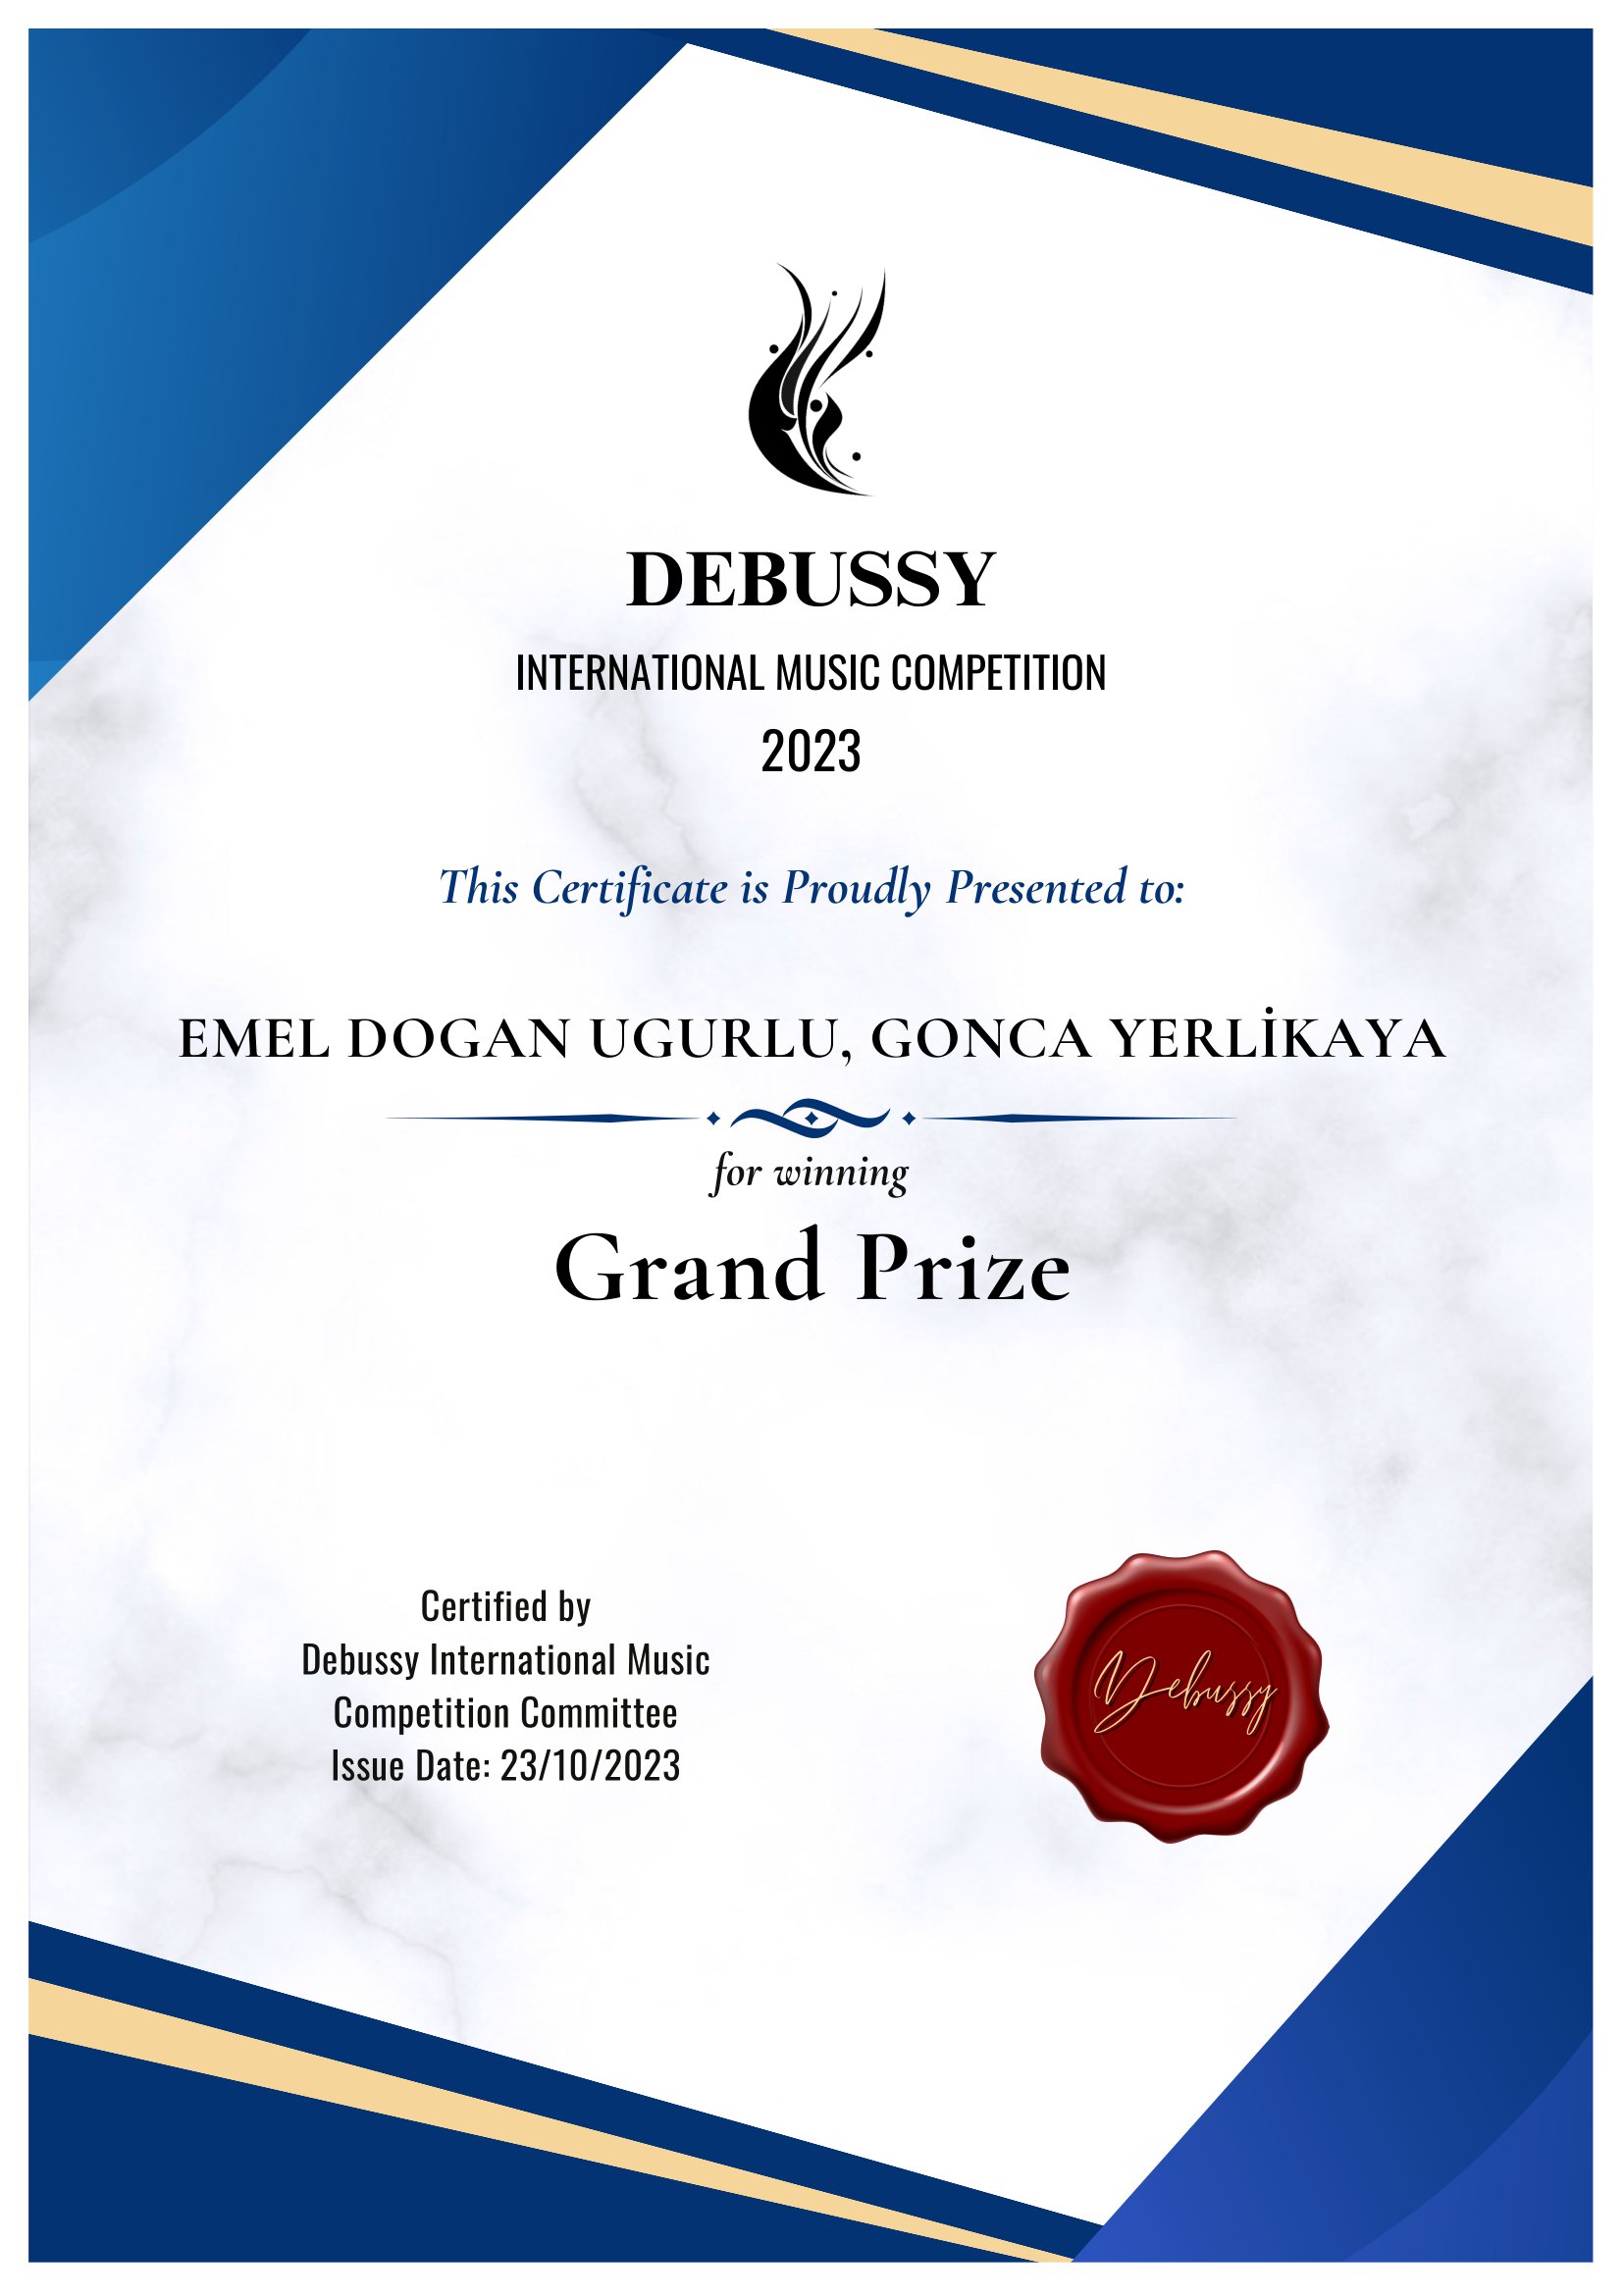 Emel DOGAN UGURLU, Gonca YERLİKAYA,Grand Prize Winner